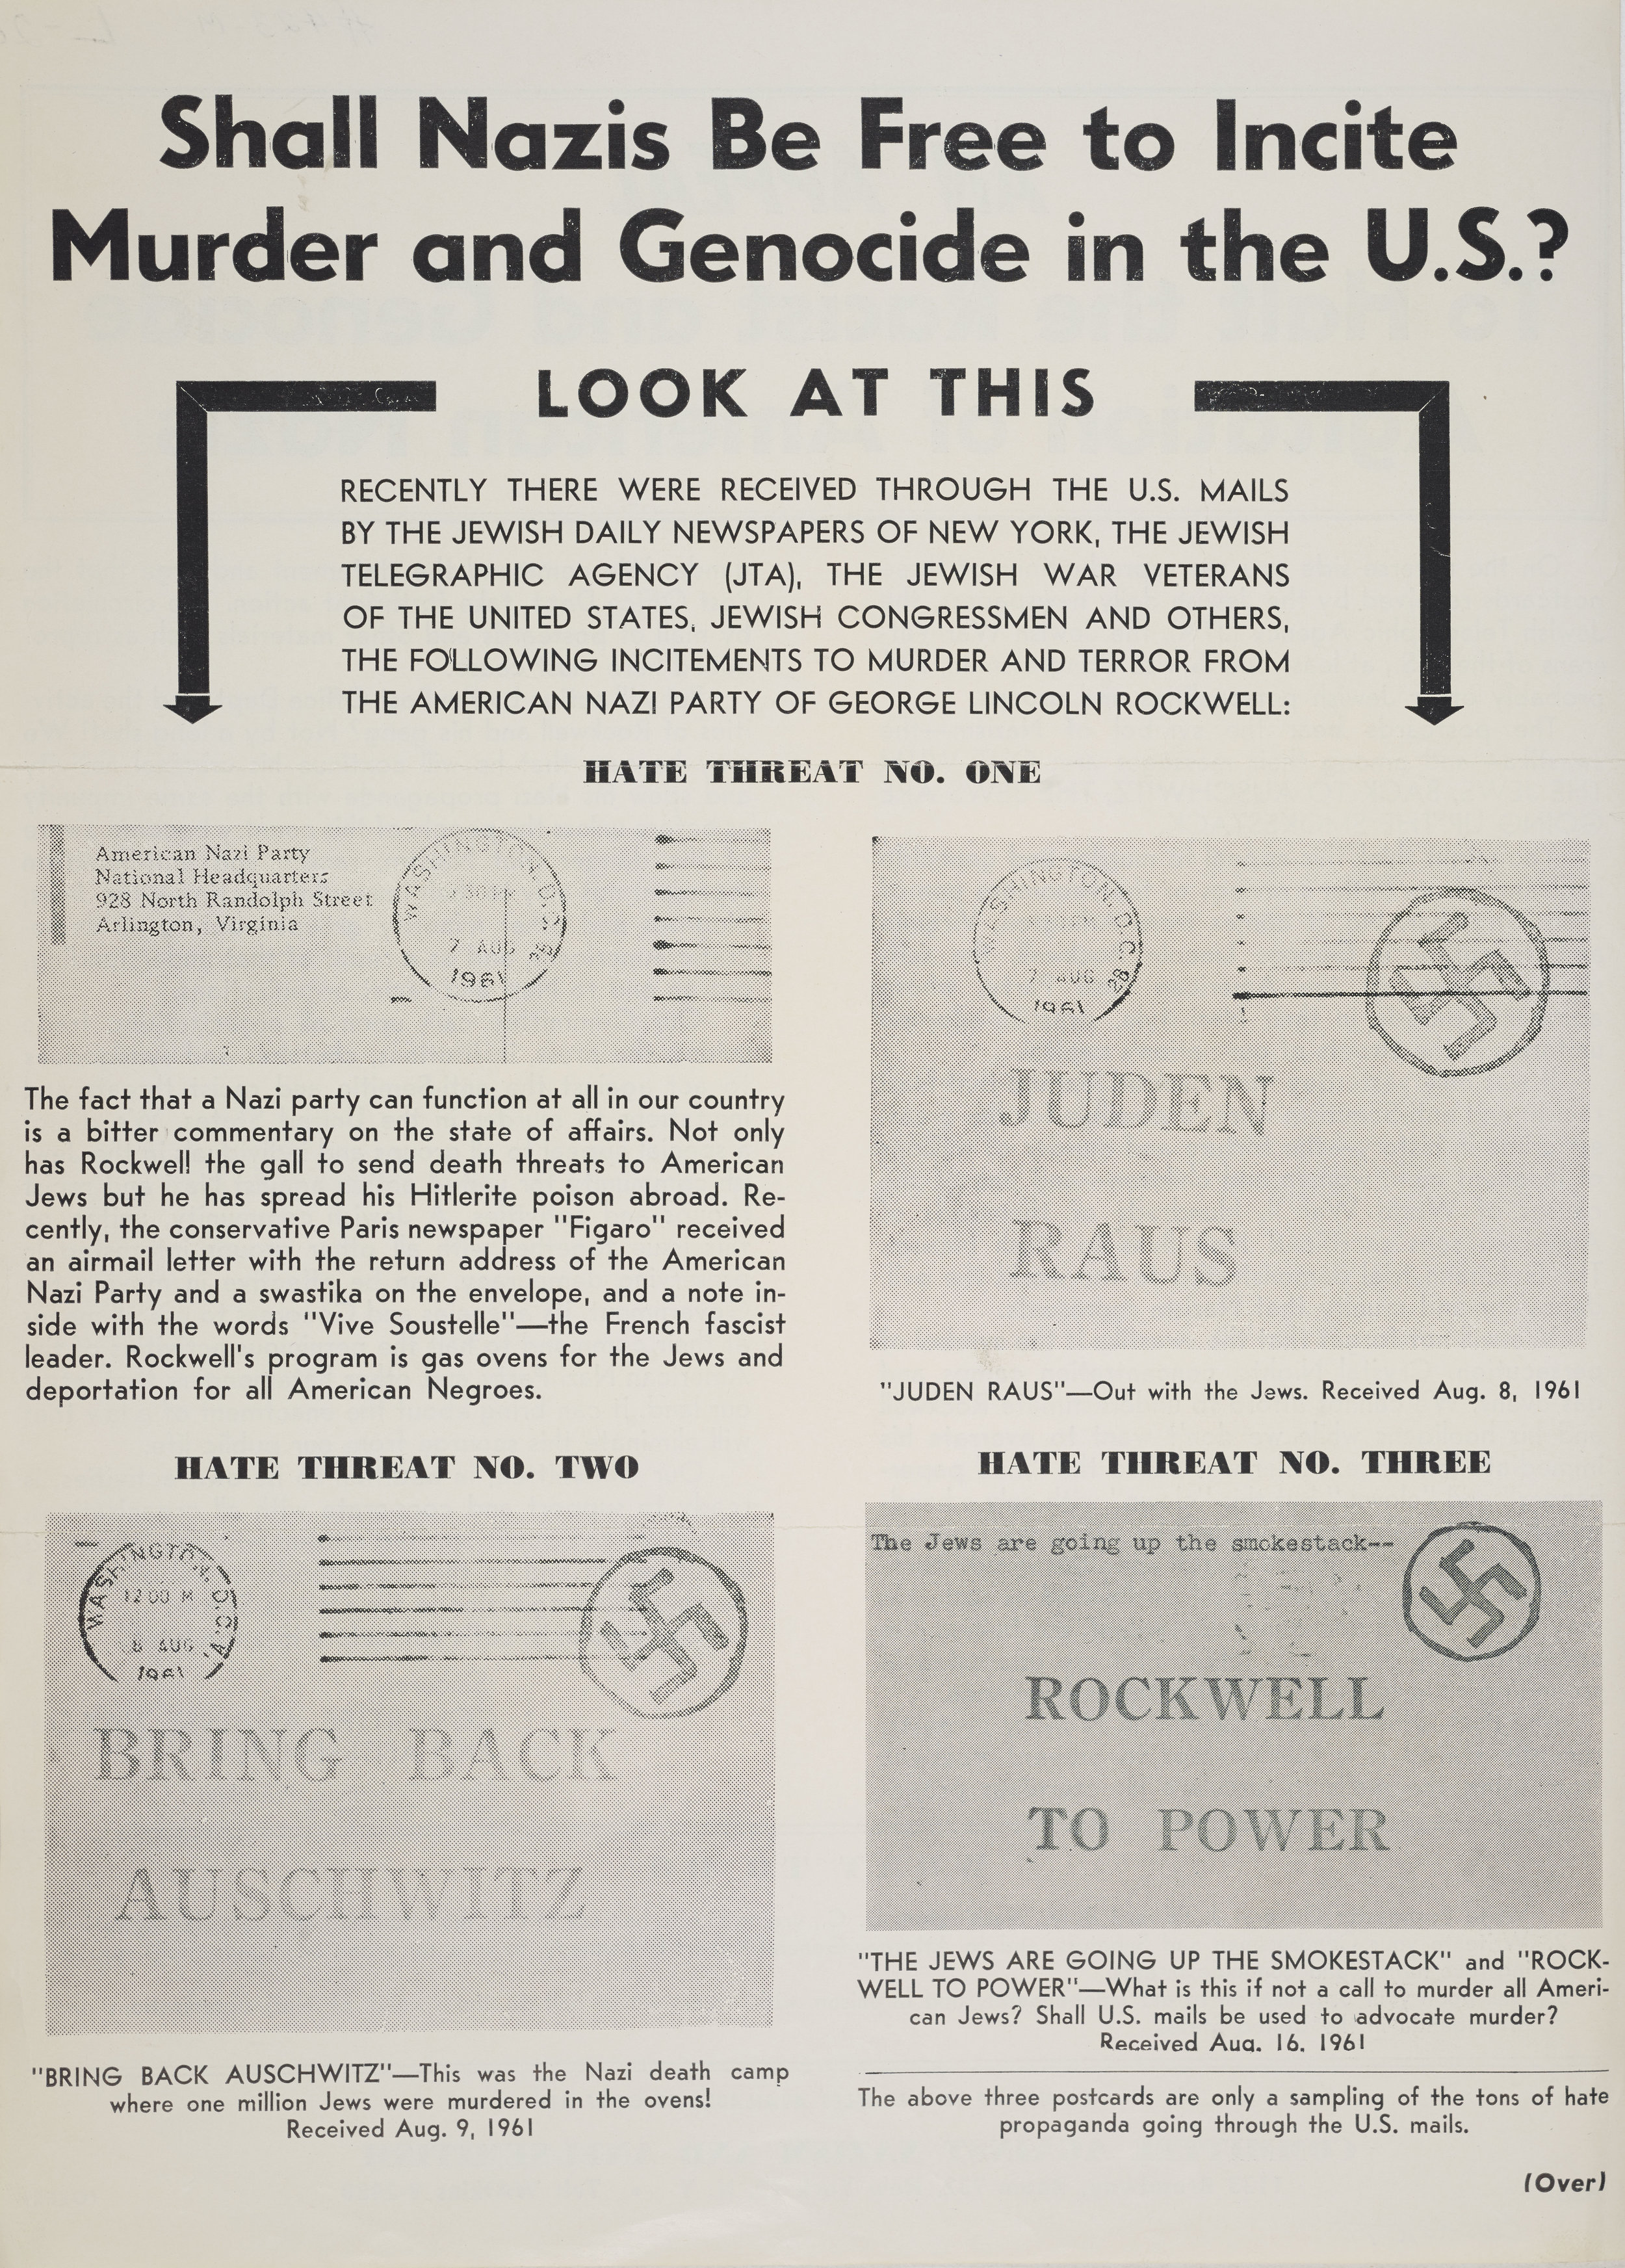 Anti-Nazi advertisement, 1961